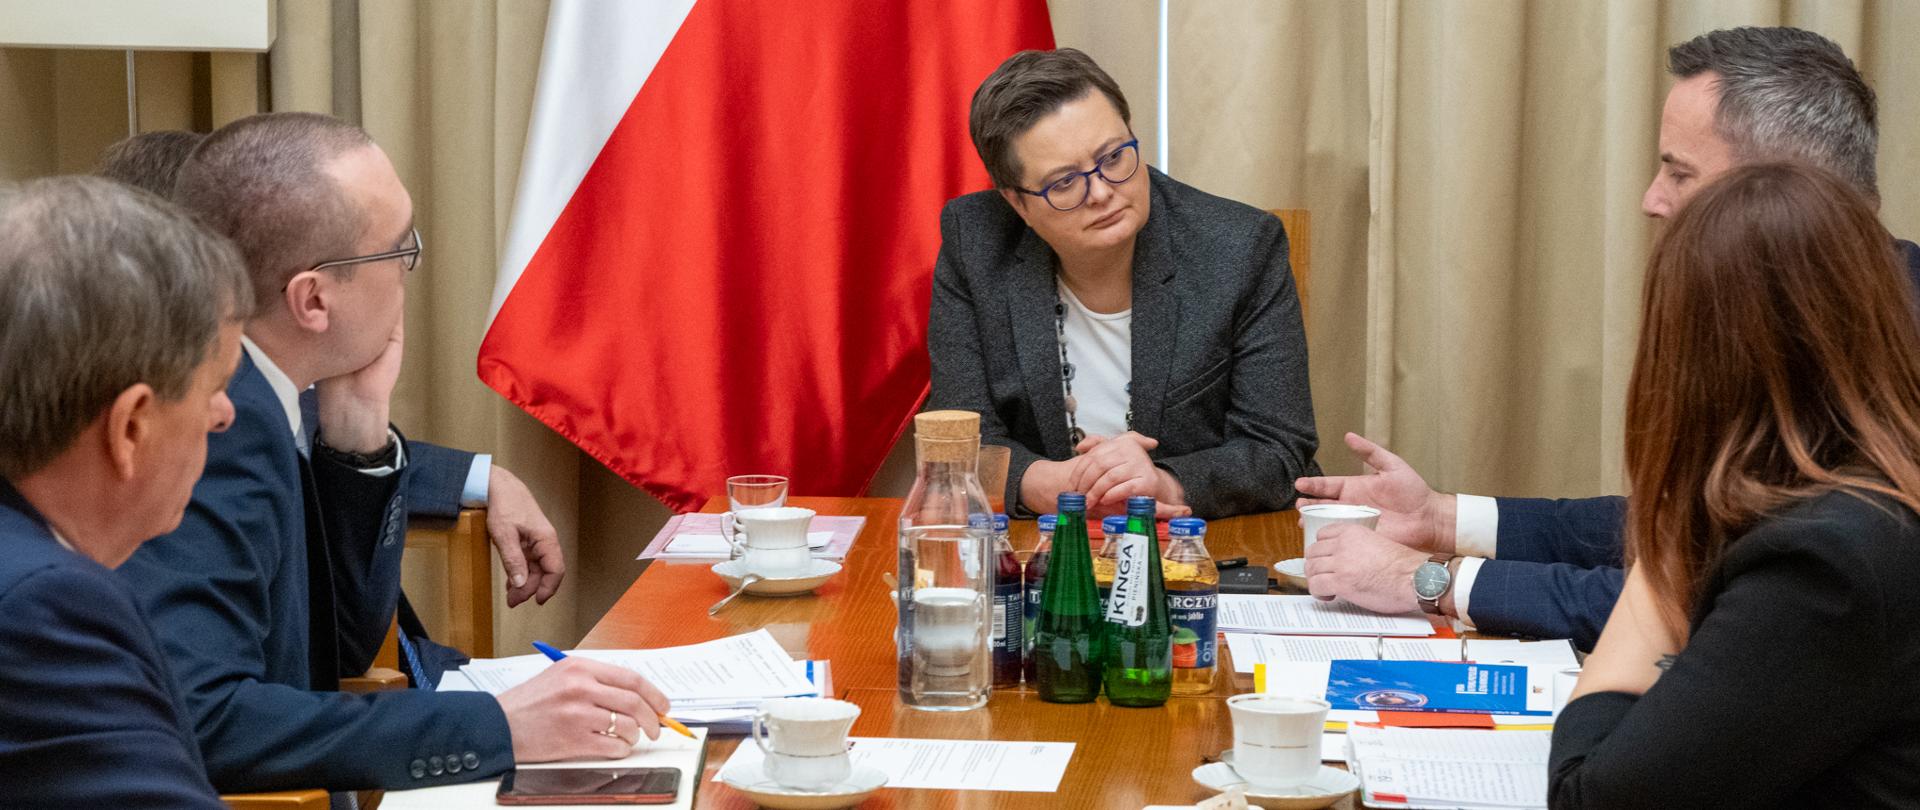 Spotkanie wiceminister Lubnauer z przedstawicielami mniejszości niemieckiej